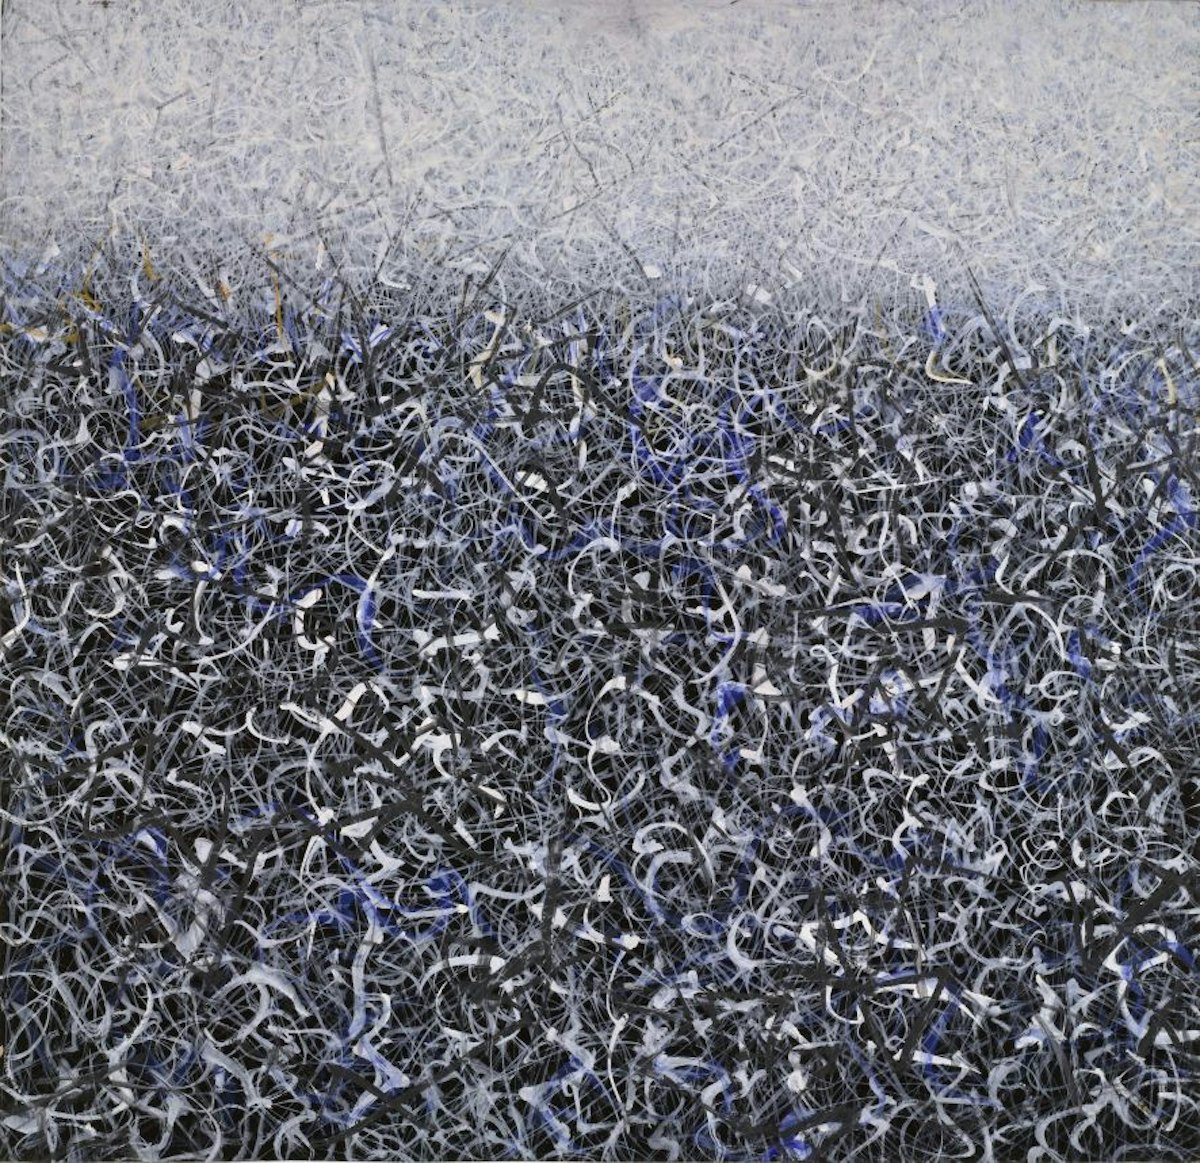 Mark Tobey
Campo selvatico(Wild Field), 1959
Tempera su pannello
67.6 x 70.2 cm
The Museum of Modern Art, New York, Collezione Sidney e Harriet Janis, 1967